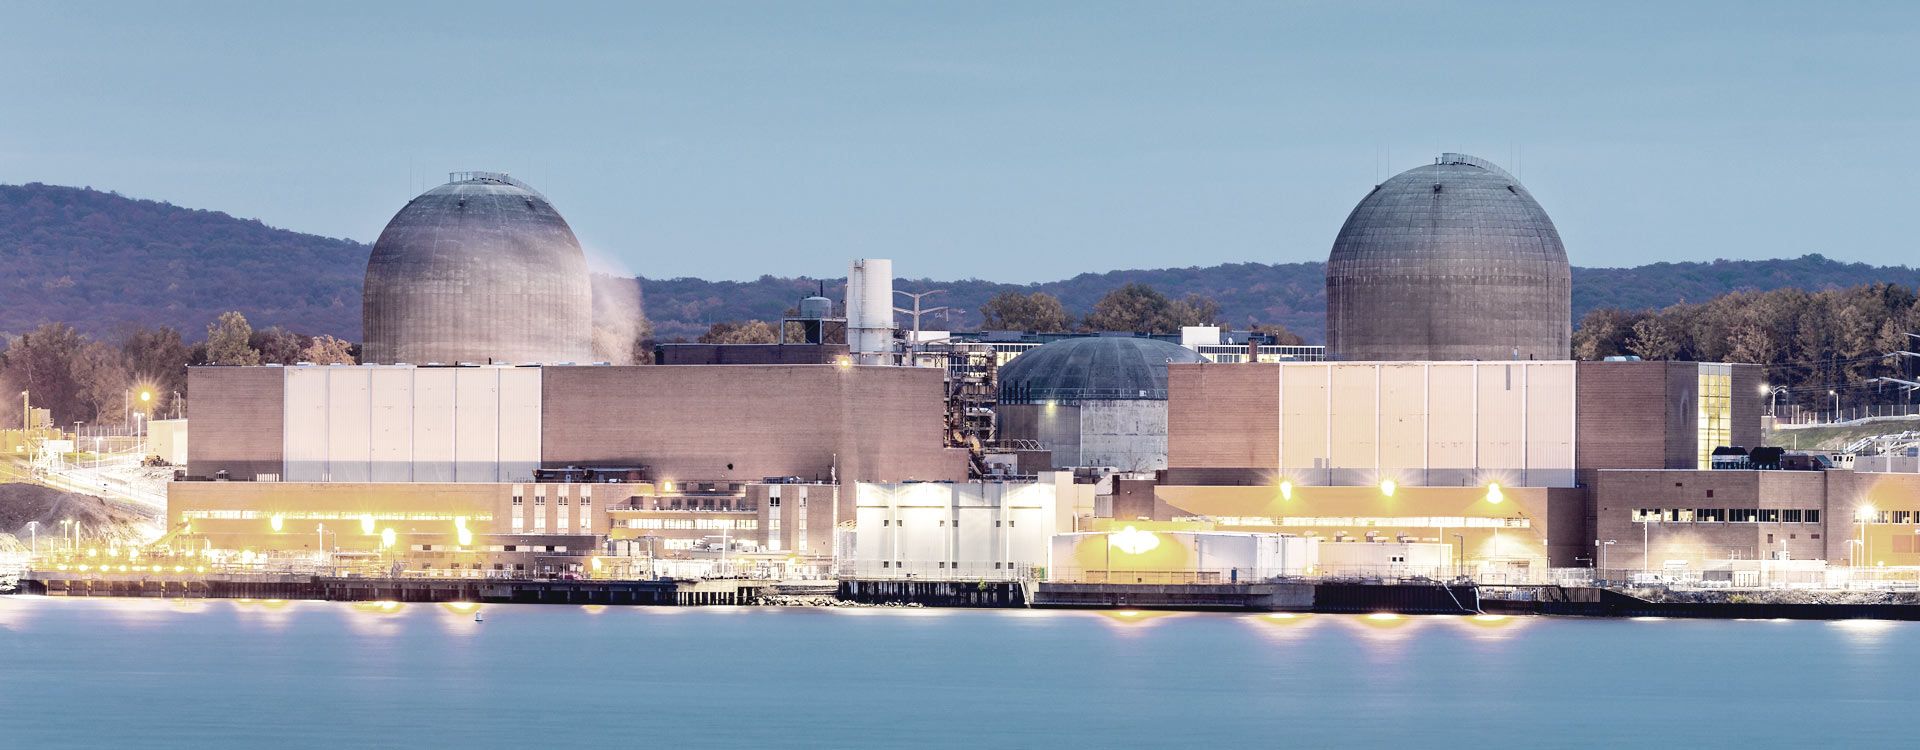 Upplyst kärnkraftverk sett från havet i skymning